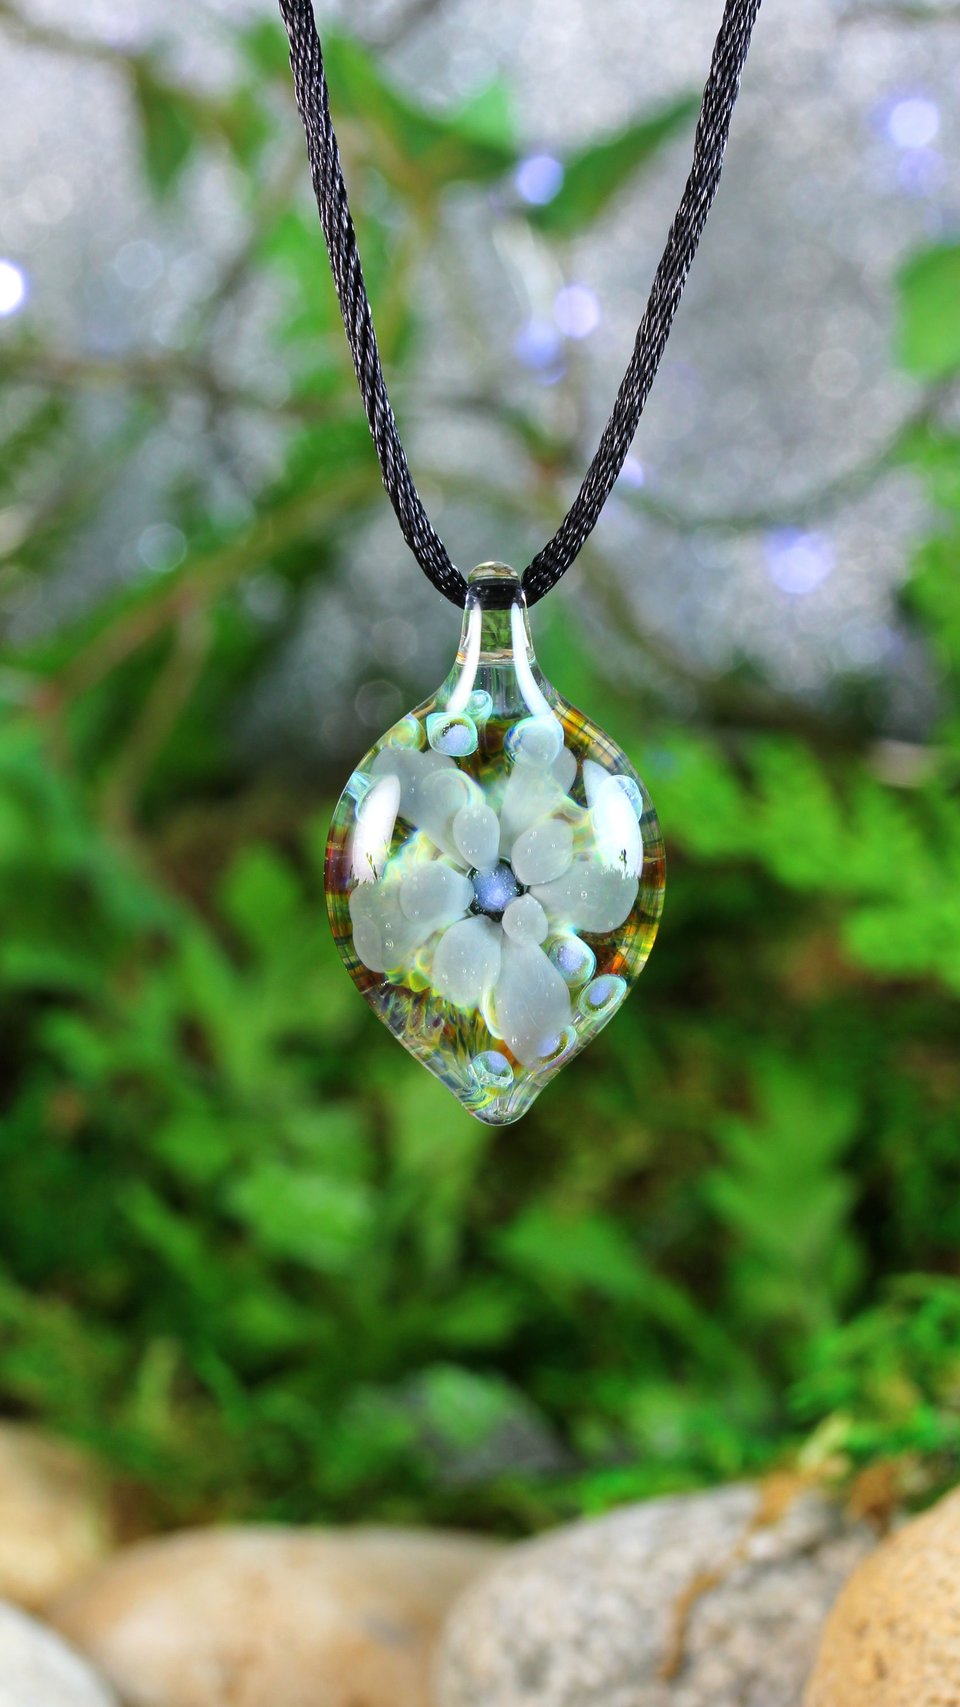 Flower Implosion Lampwork Pendant // Handmade Glass // Boro/Borosilicate Glass // Gray, Blue, Green, Soft 3-D // Z1152